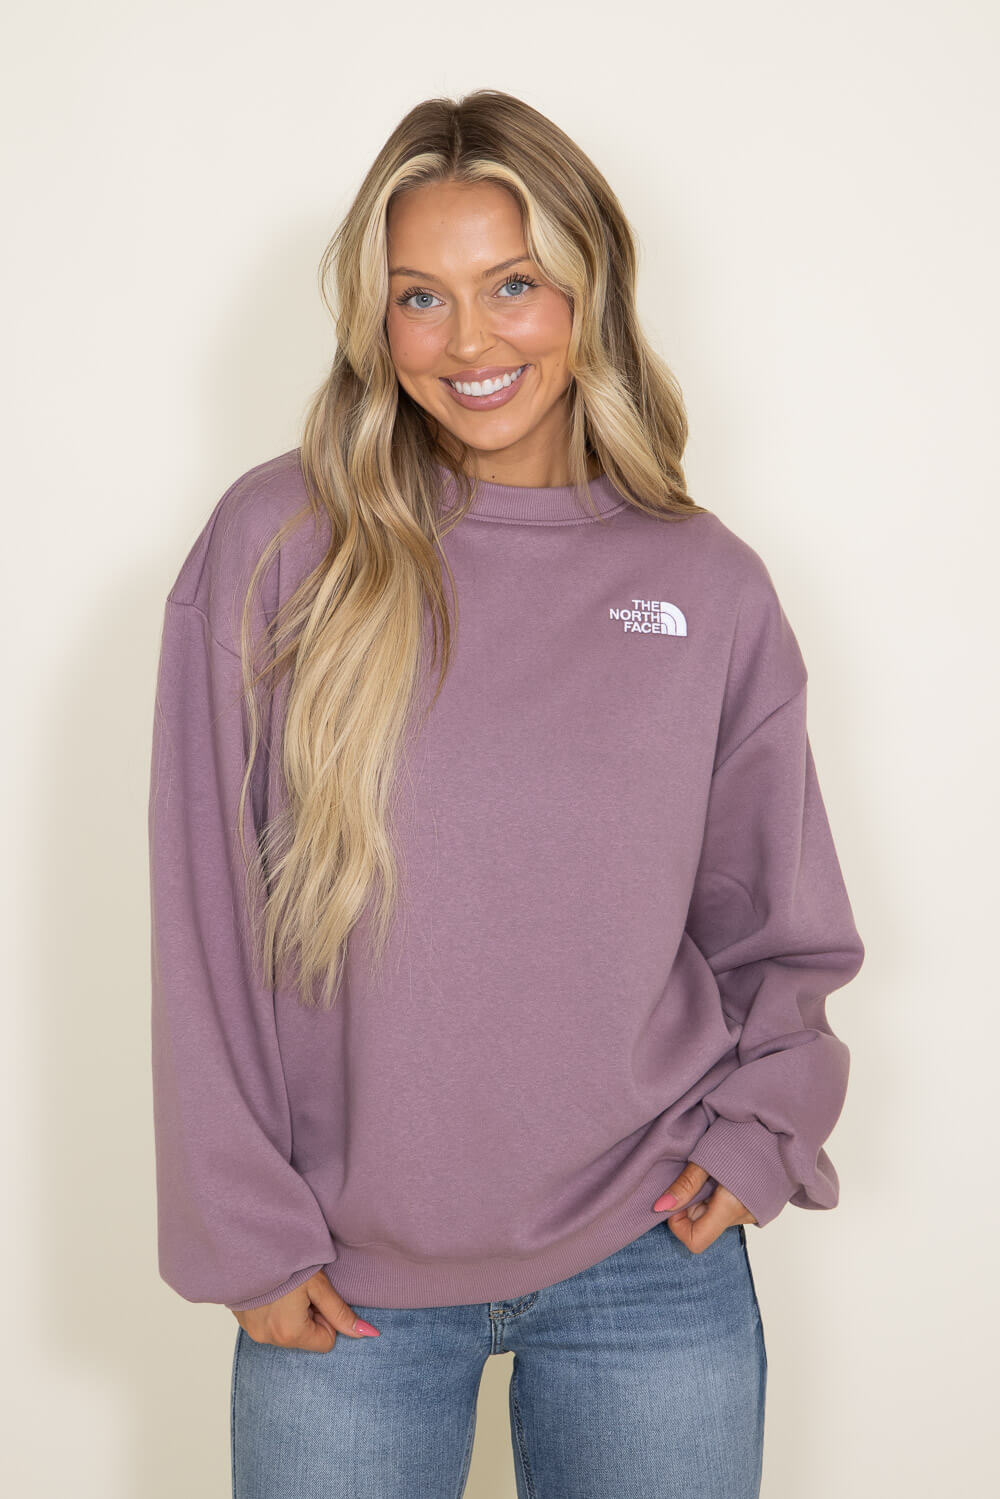 The North Face Women's Maggy Sweater Fleece Purple Size L - $80 - From  Jocelyn